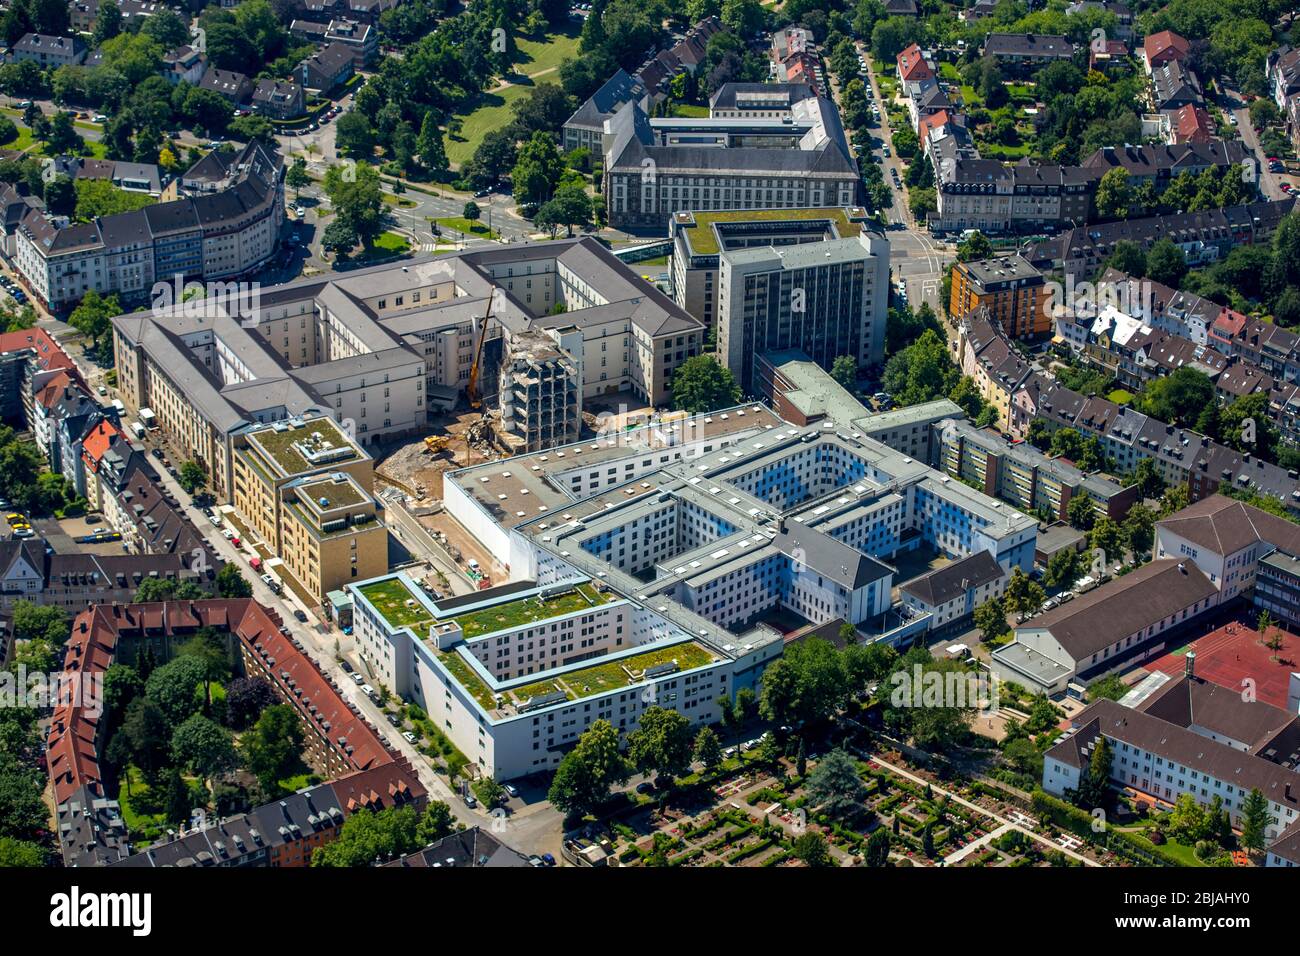 complex of the courts Landgericht und Amtsgericht Essen and prison, 23.06.2016, aerial view, Germany, North Rhine-Westphalia, Ruhr Area, Essen Stock Photo